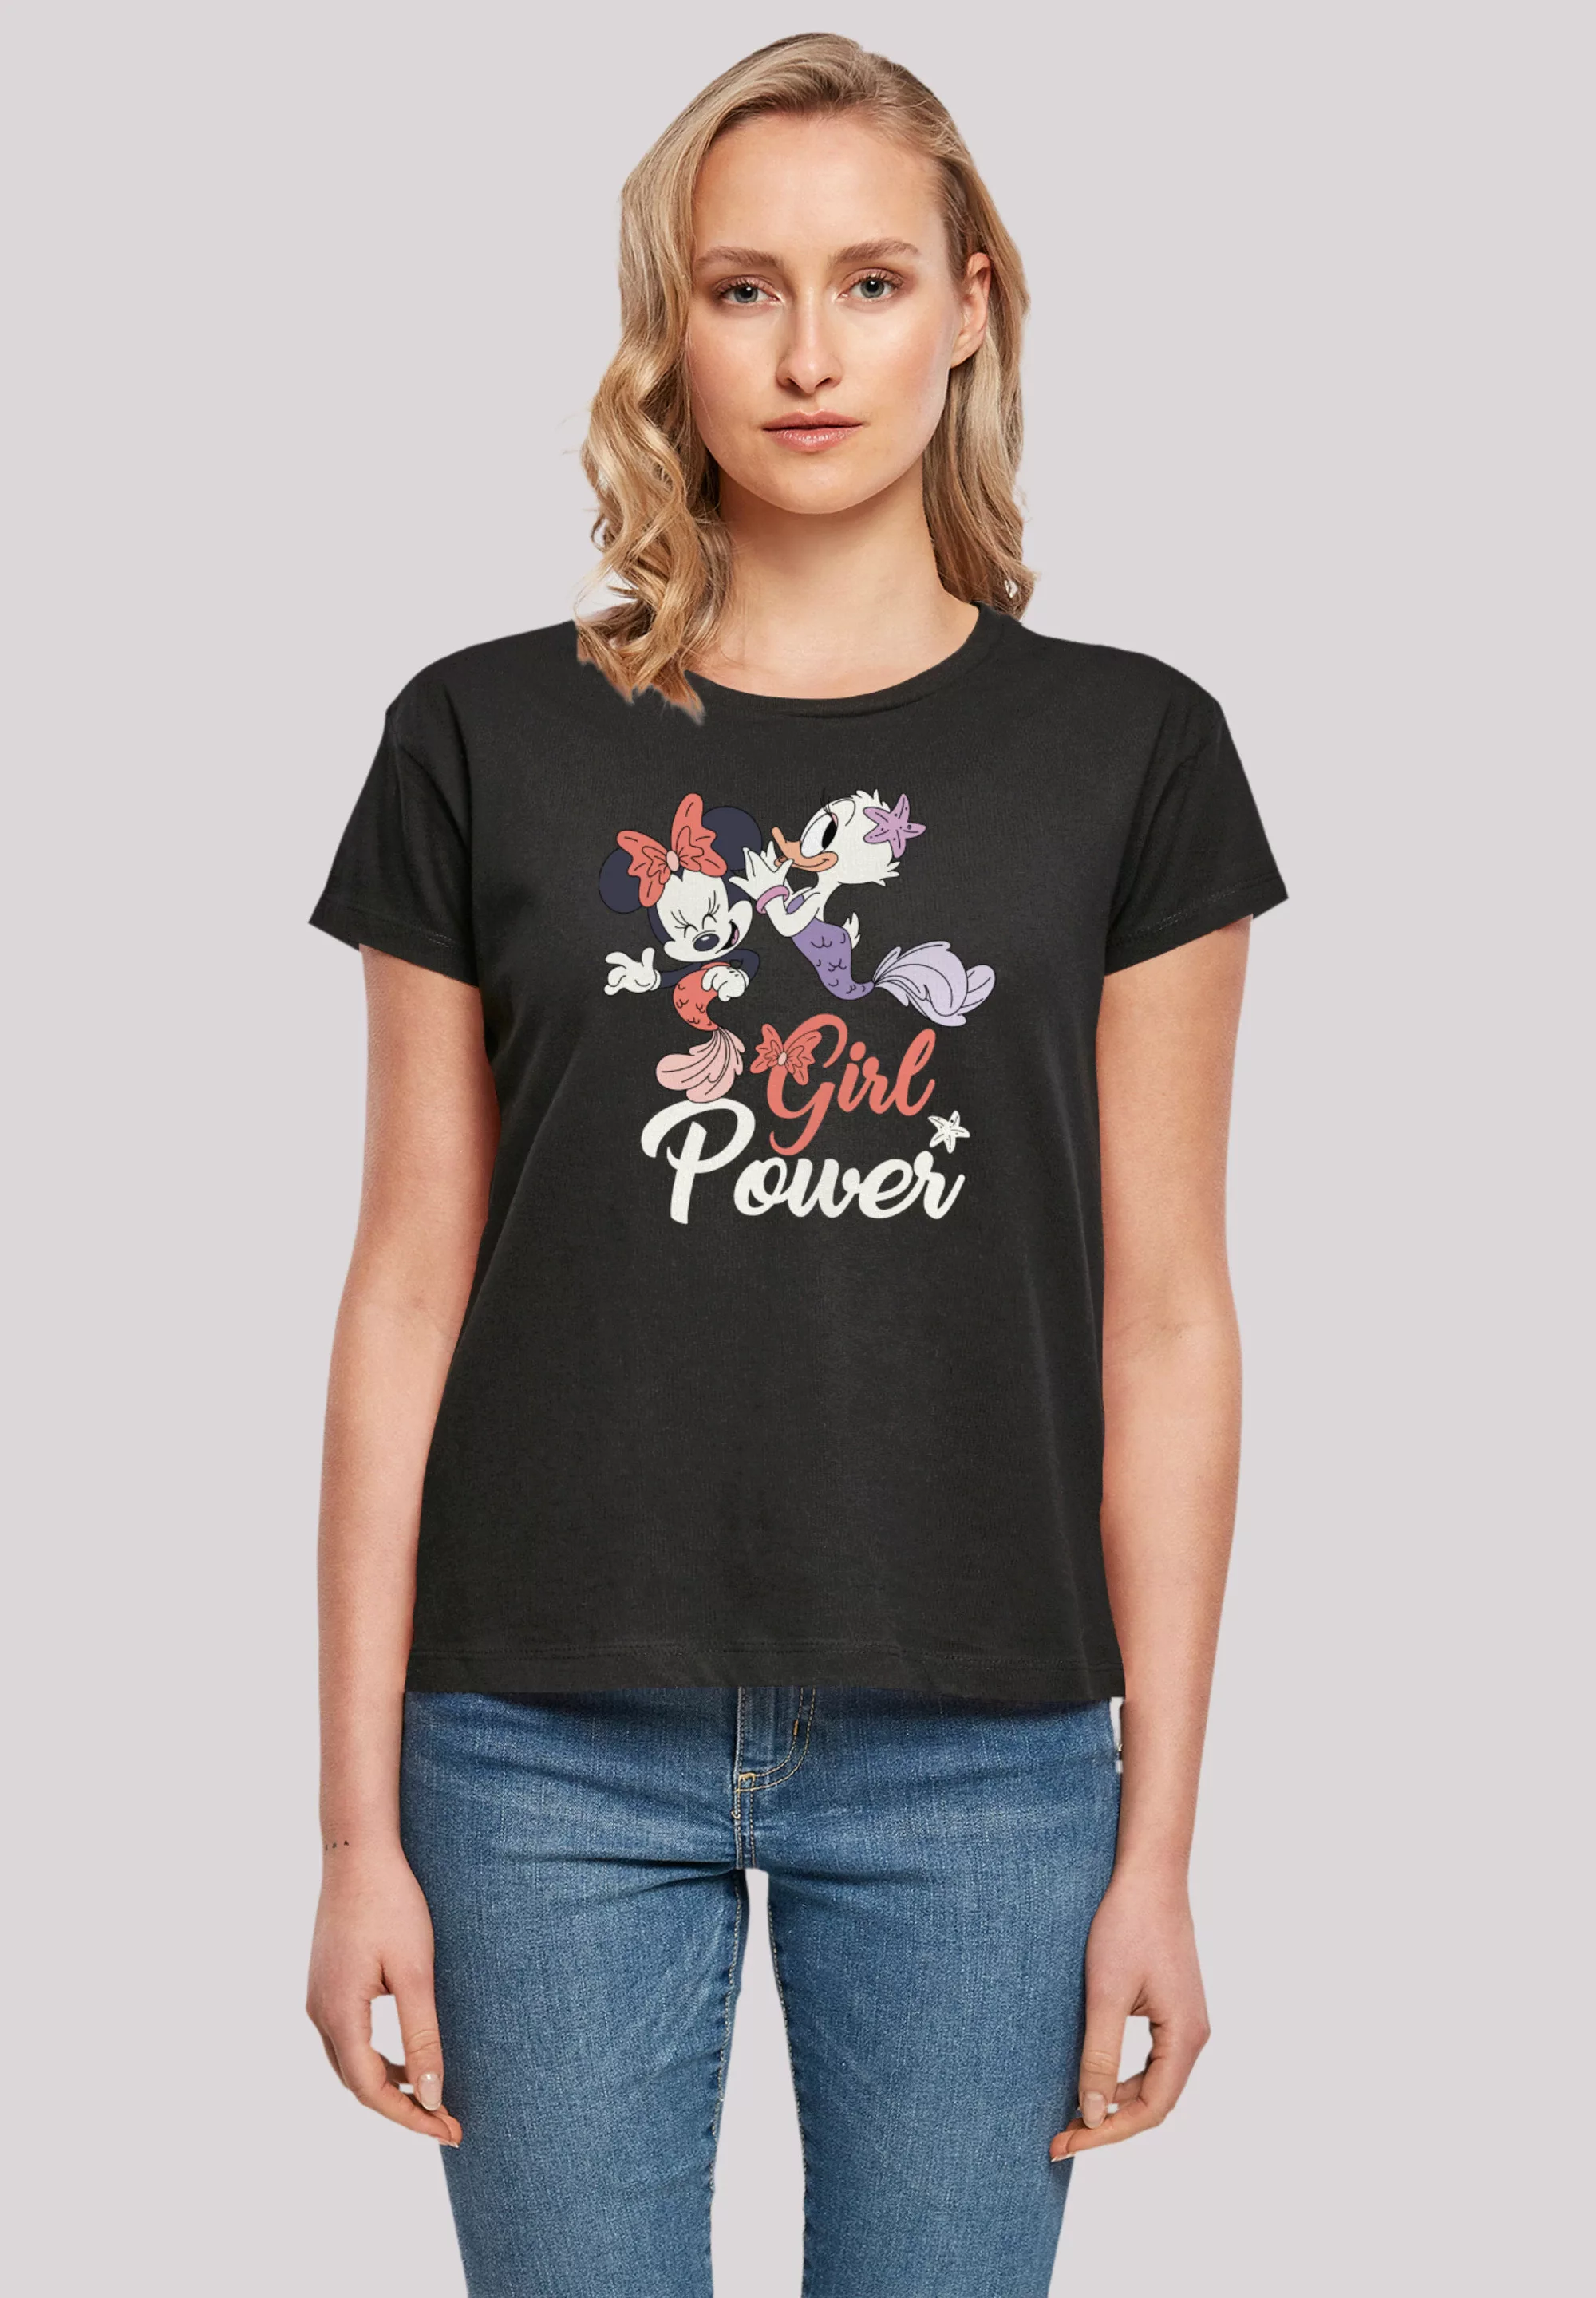 F4NT4STIC T-Shirt "Disney Minnie Maus & Daisy Girl Power", Premium Qualität günstig online kaufen